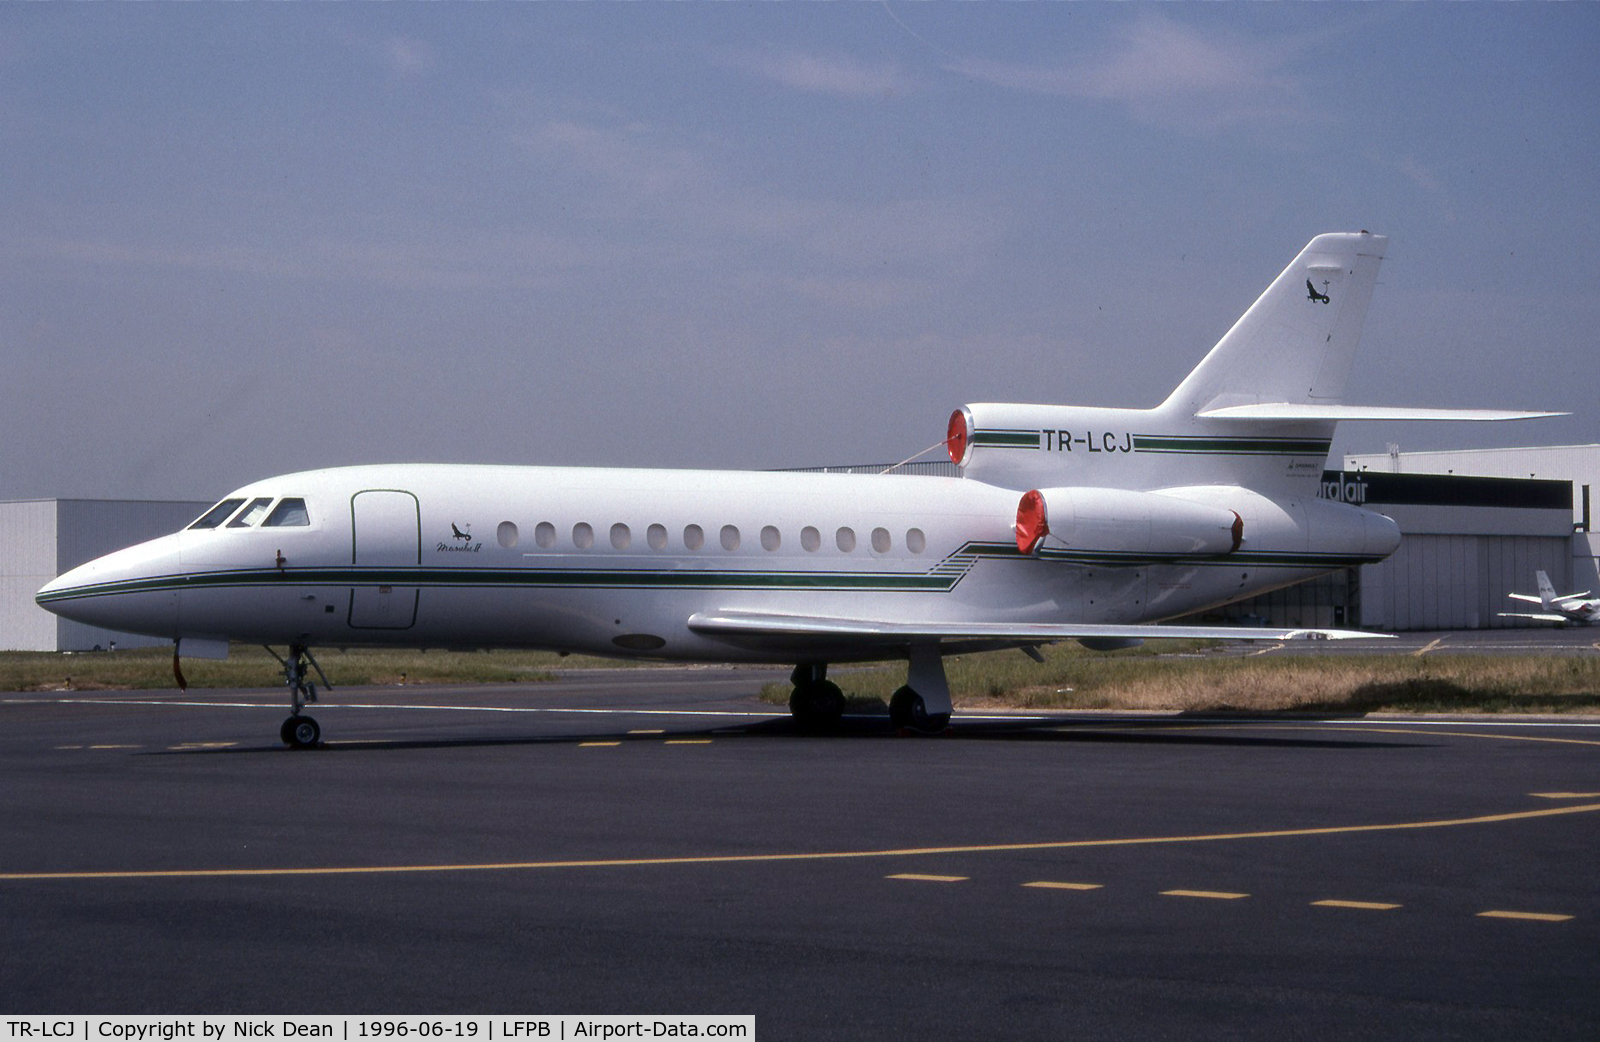 TR-LCJ, 1987 Dassault-Breguet Falcon (Mystere) 900 C/N 007, LFPB Paris Le Bourget